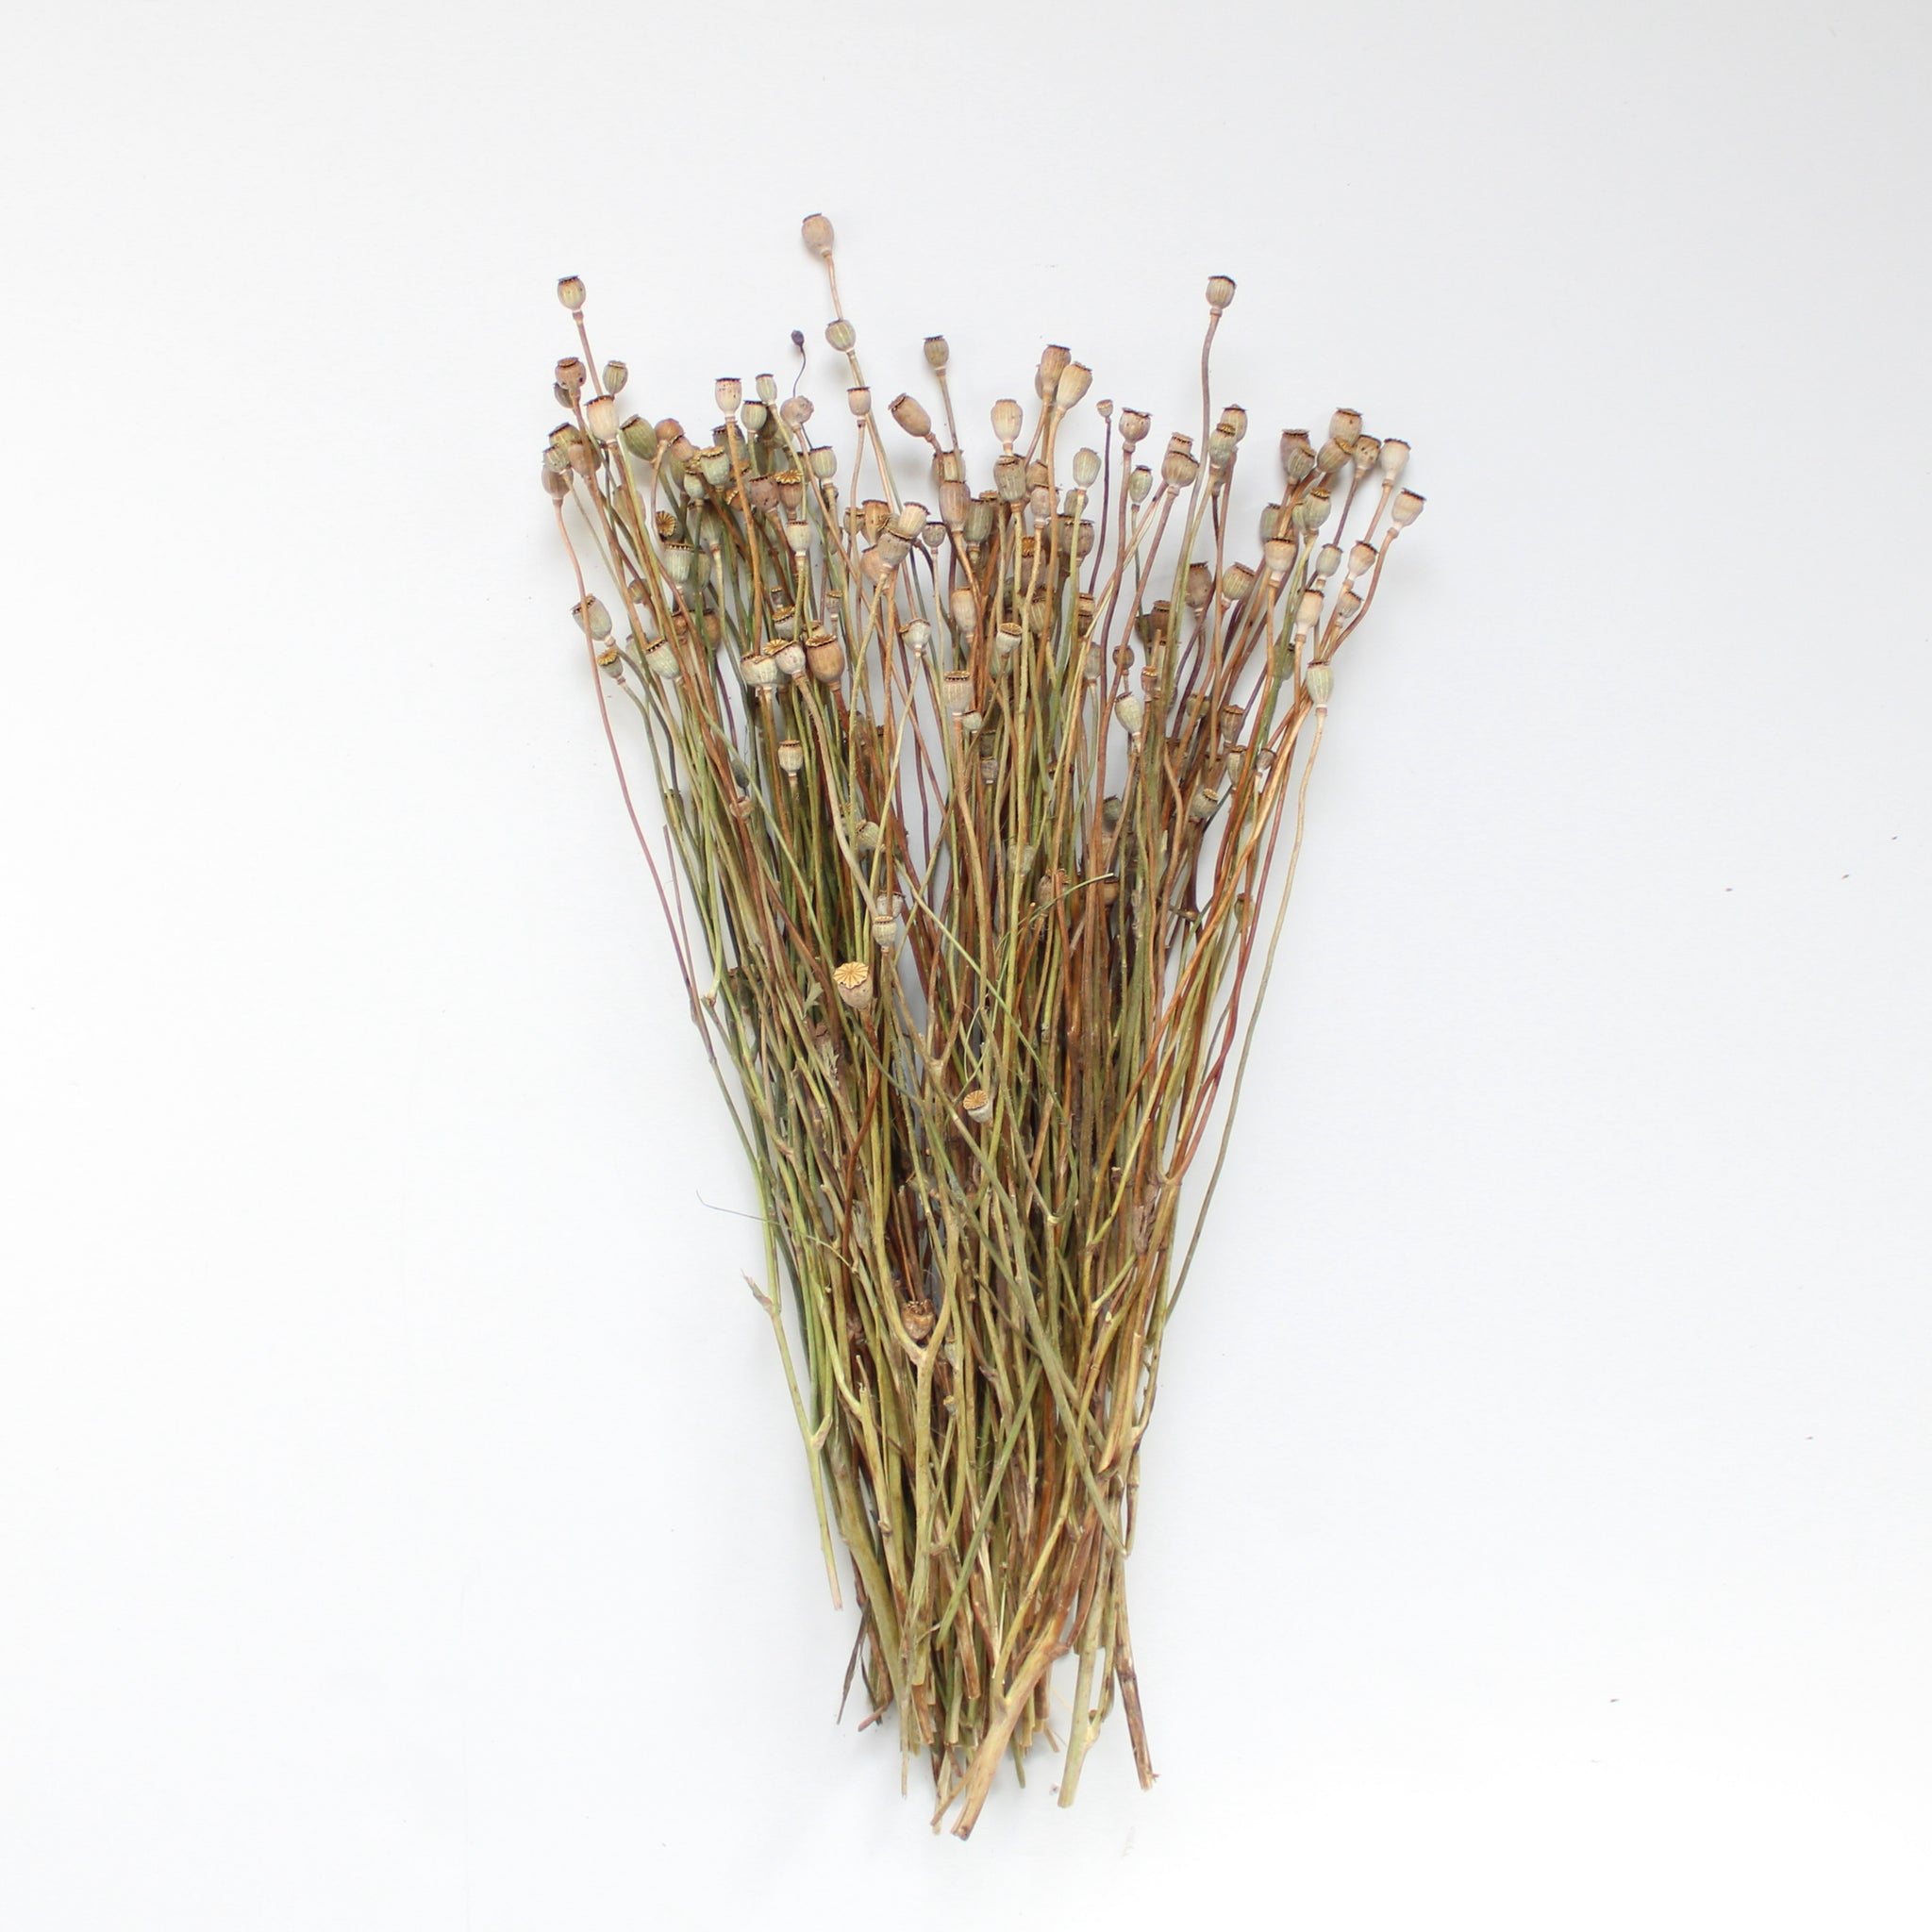 Classic Dried Flower Wrap – Native Poppy